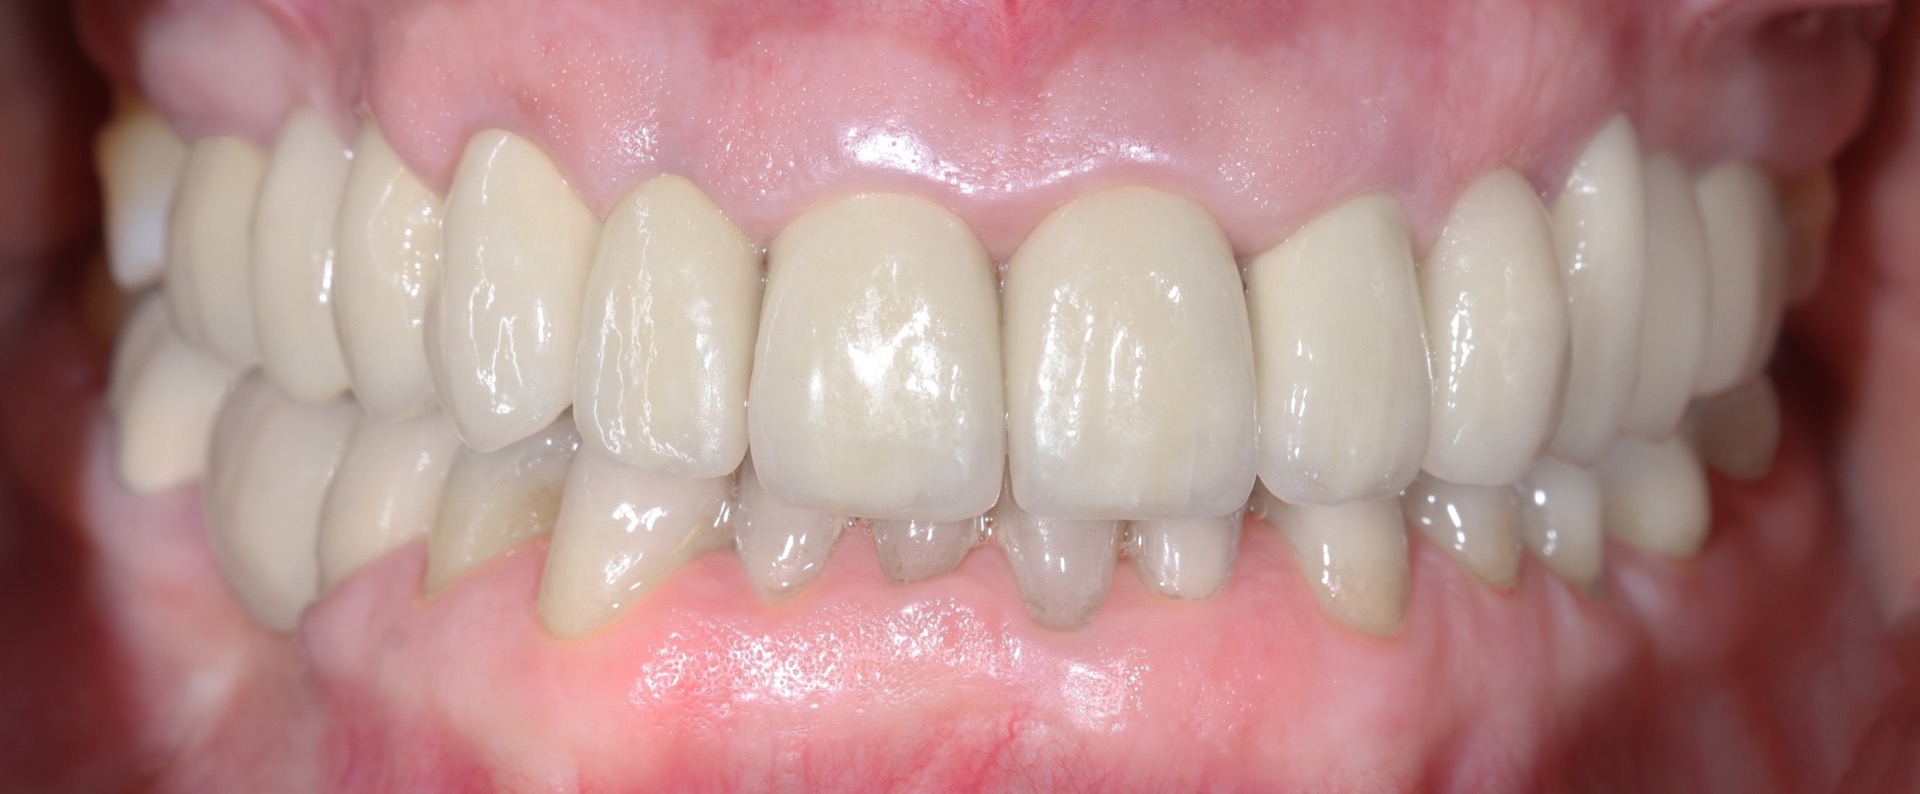 Τελική κατάσταση - Πρόσθια άποψη των αποκαταστάσεων τοποθετημένων στο στόμα (σε σύγκλειση) - Αποκατάσταση της αισθητικής και της σύγκλεισης της ασθενούς